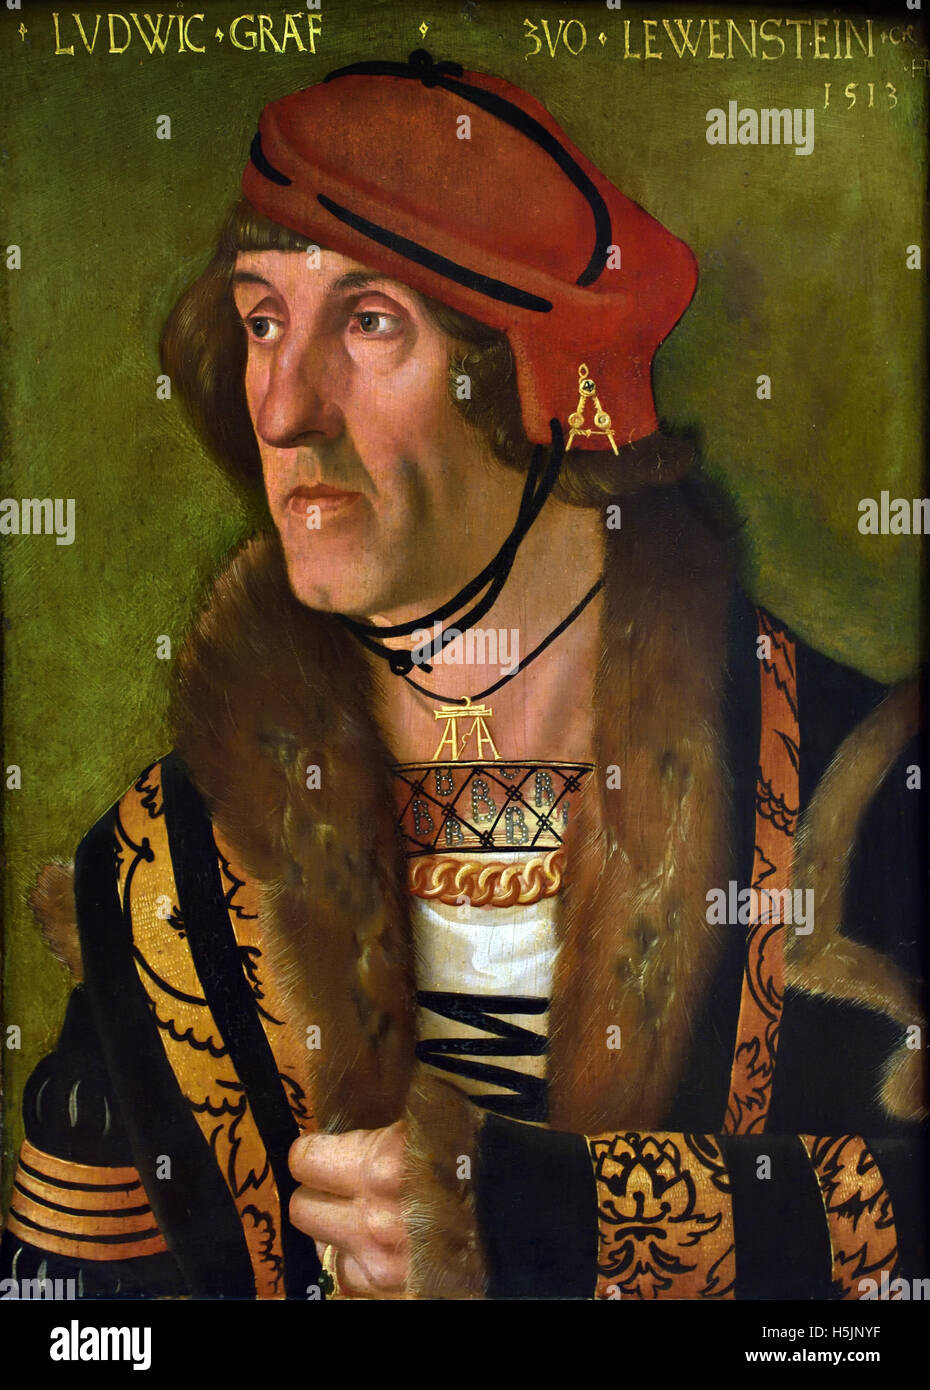 Ludwig Graf Zu Loewenstein - Ludwig Count Zu Loewenstein 1513 Hans Baldung Grien 1484-1545 deutscher Maler und Grafiker Straßburg Deutschland Stockfoto